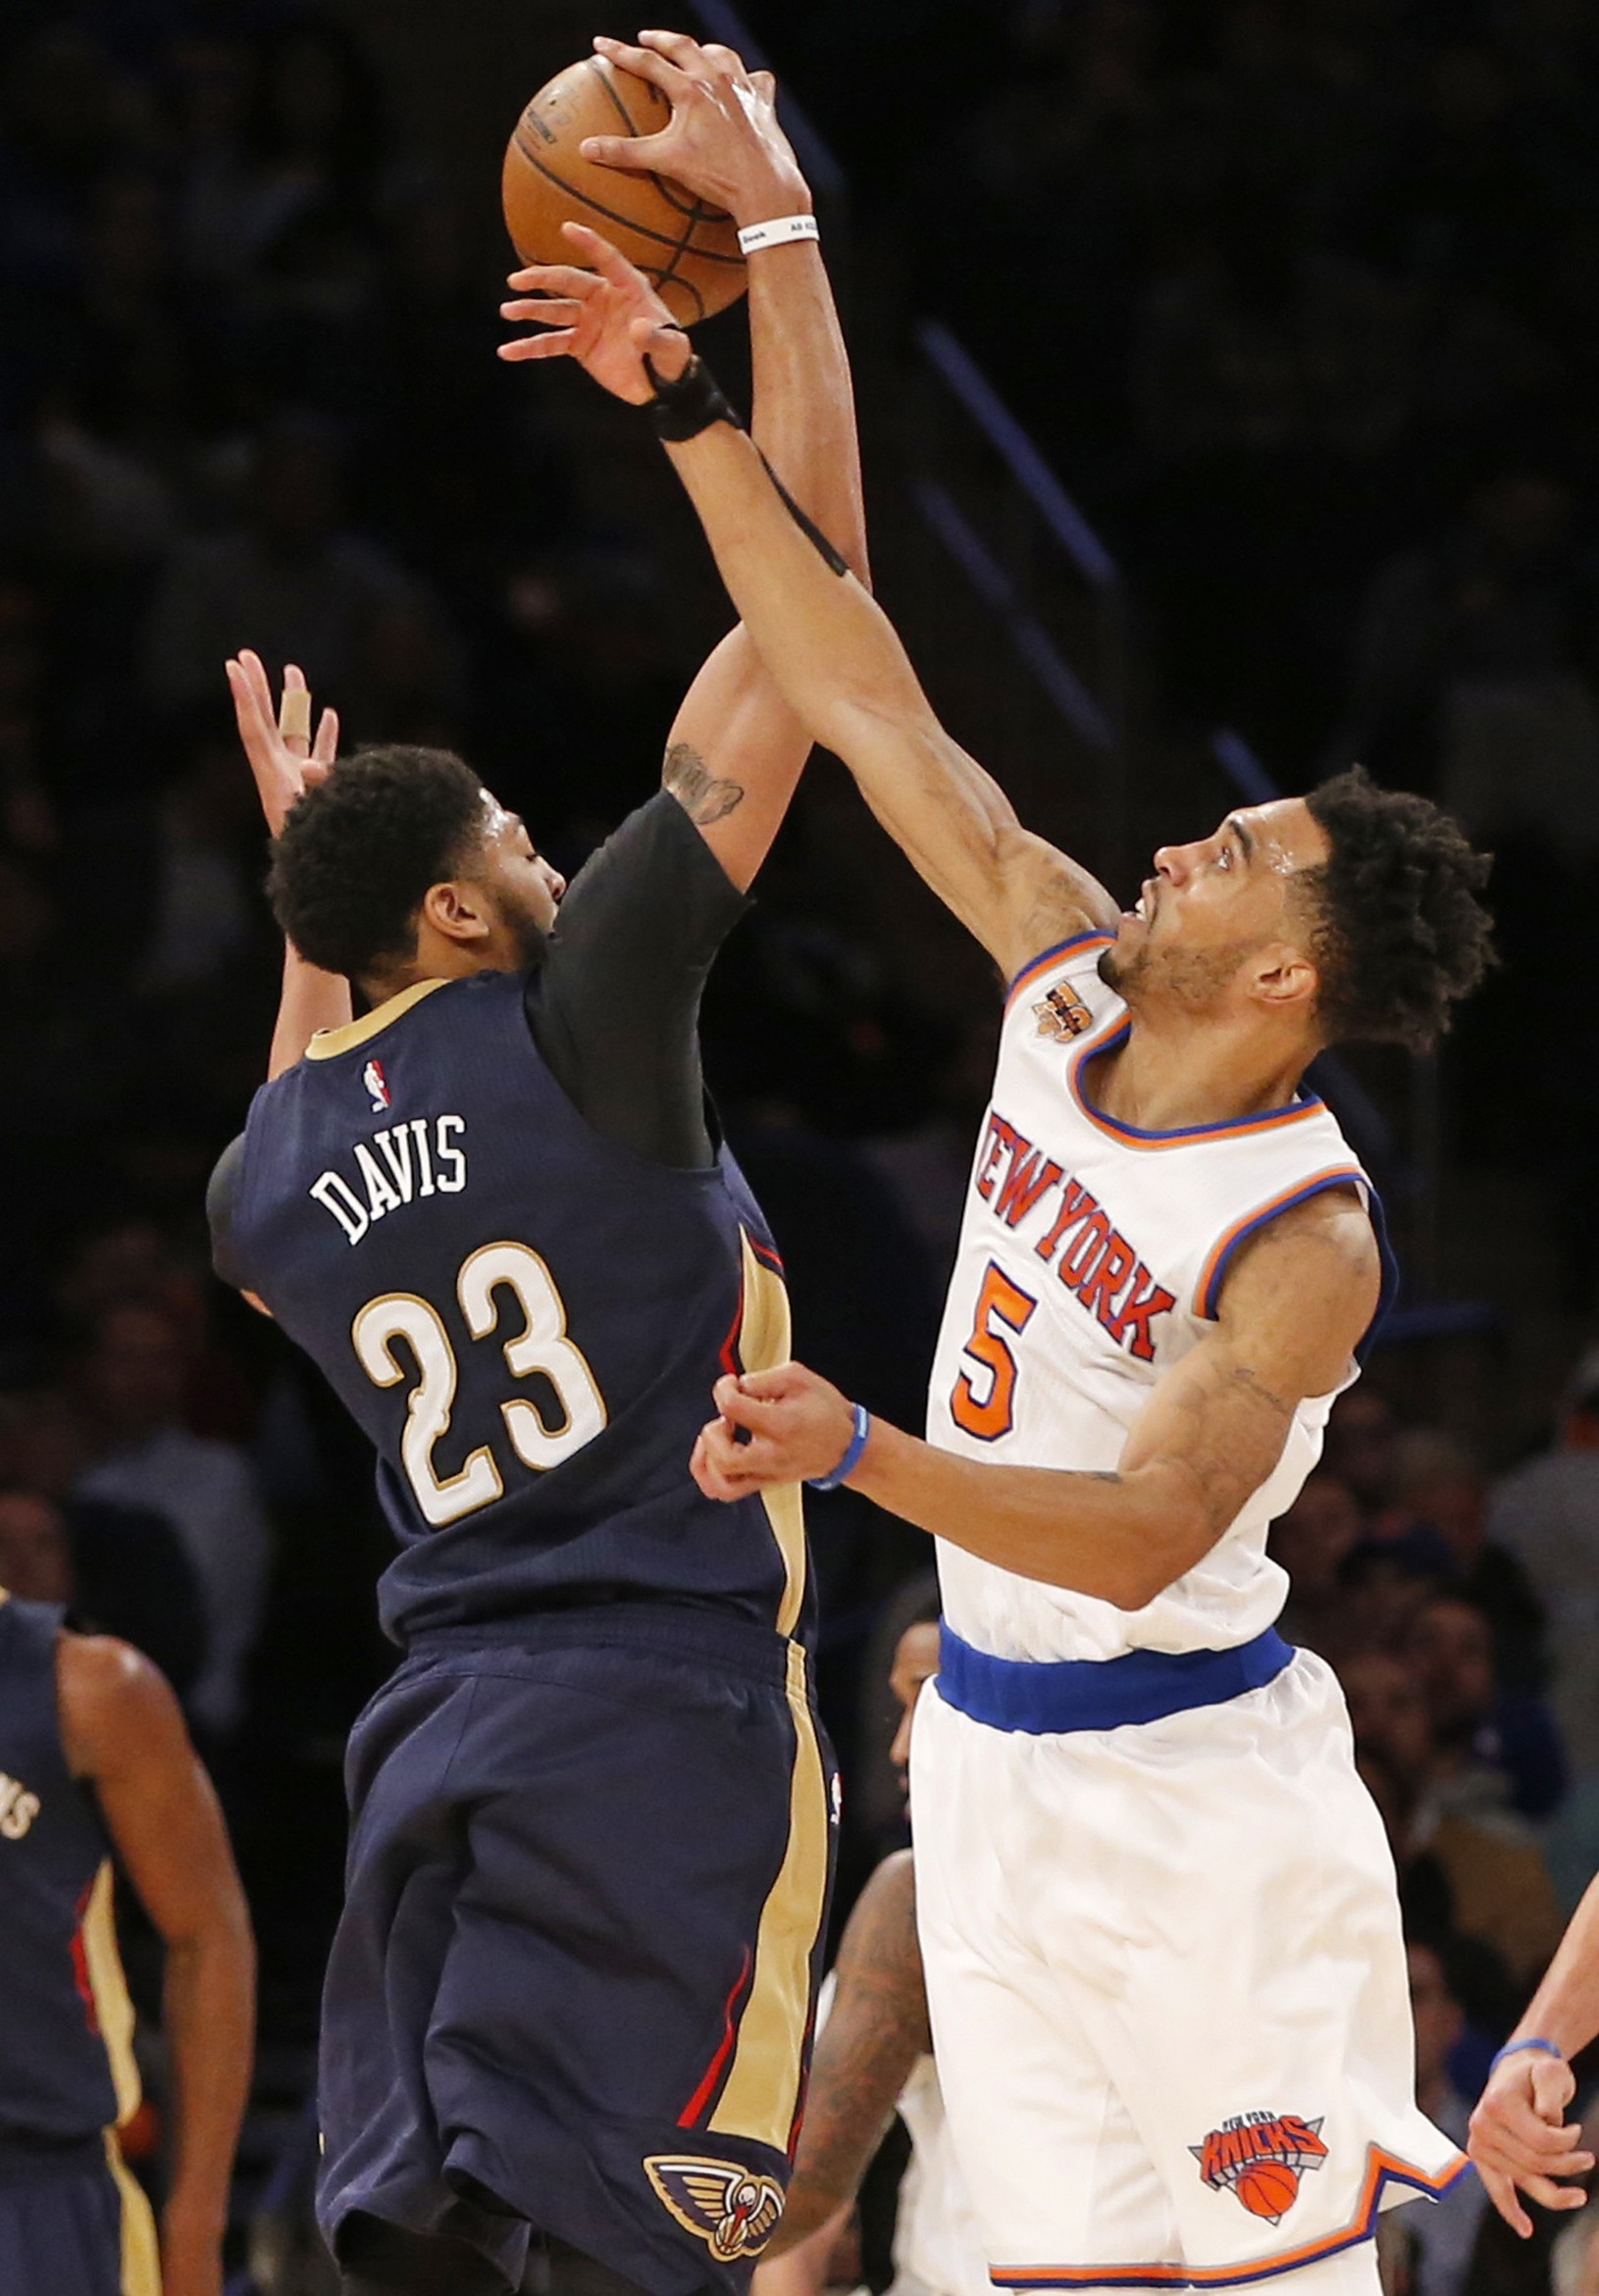 New York Knicks guard